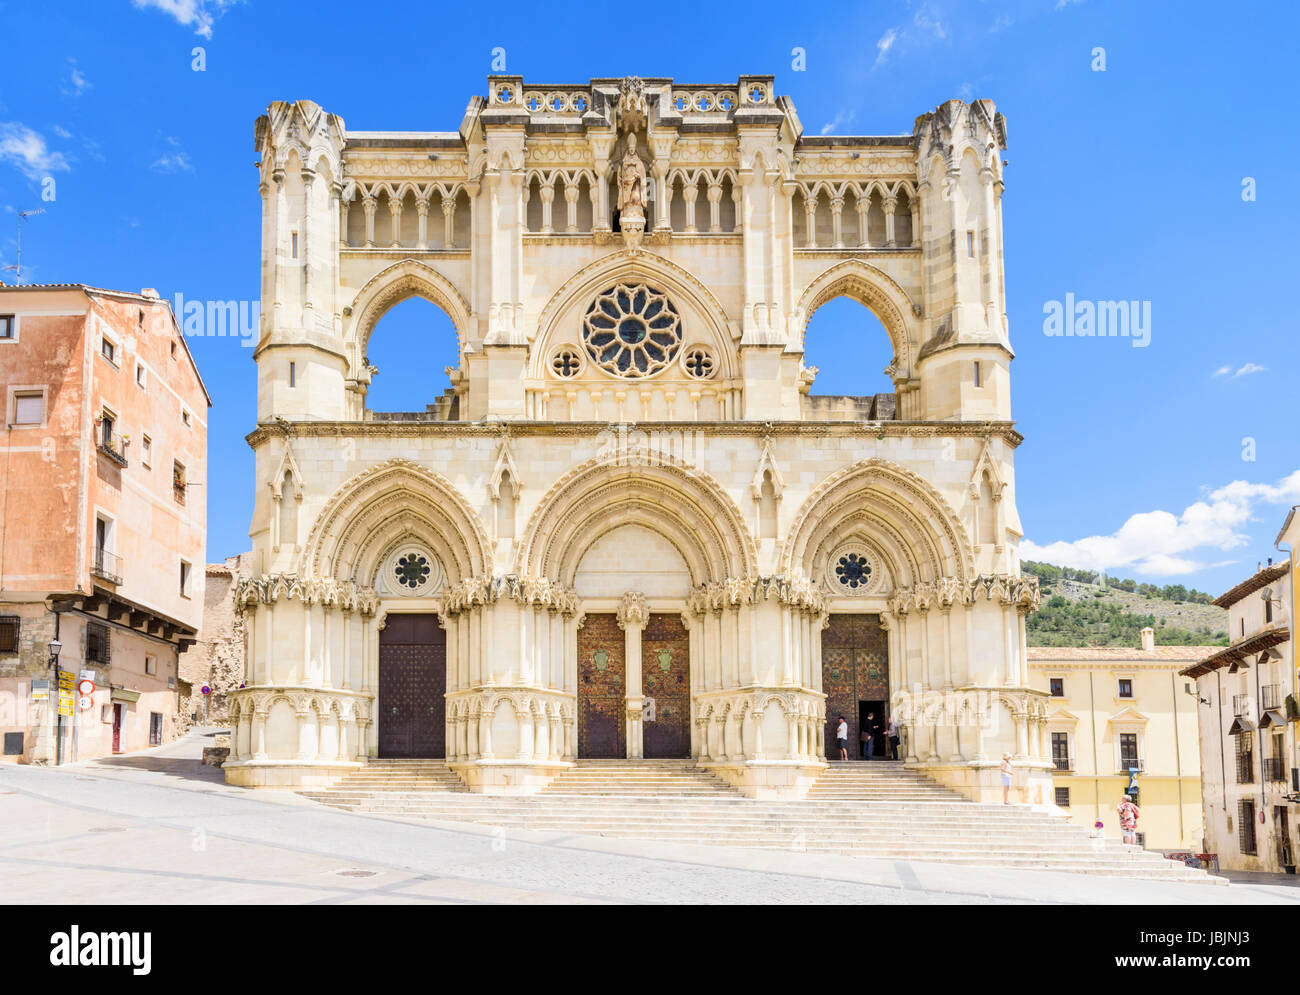 La facciata della Cattedrale di Santa Maria de Gracia, Plaza Mayor, Cuenca, Castilla La Mancha, in Spagna Foto Stock